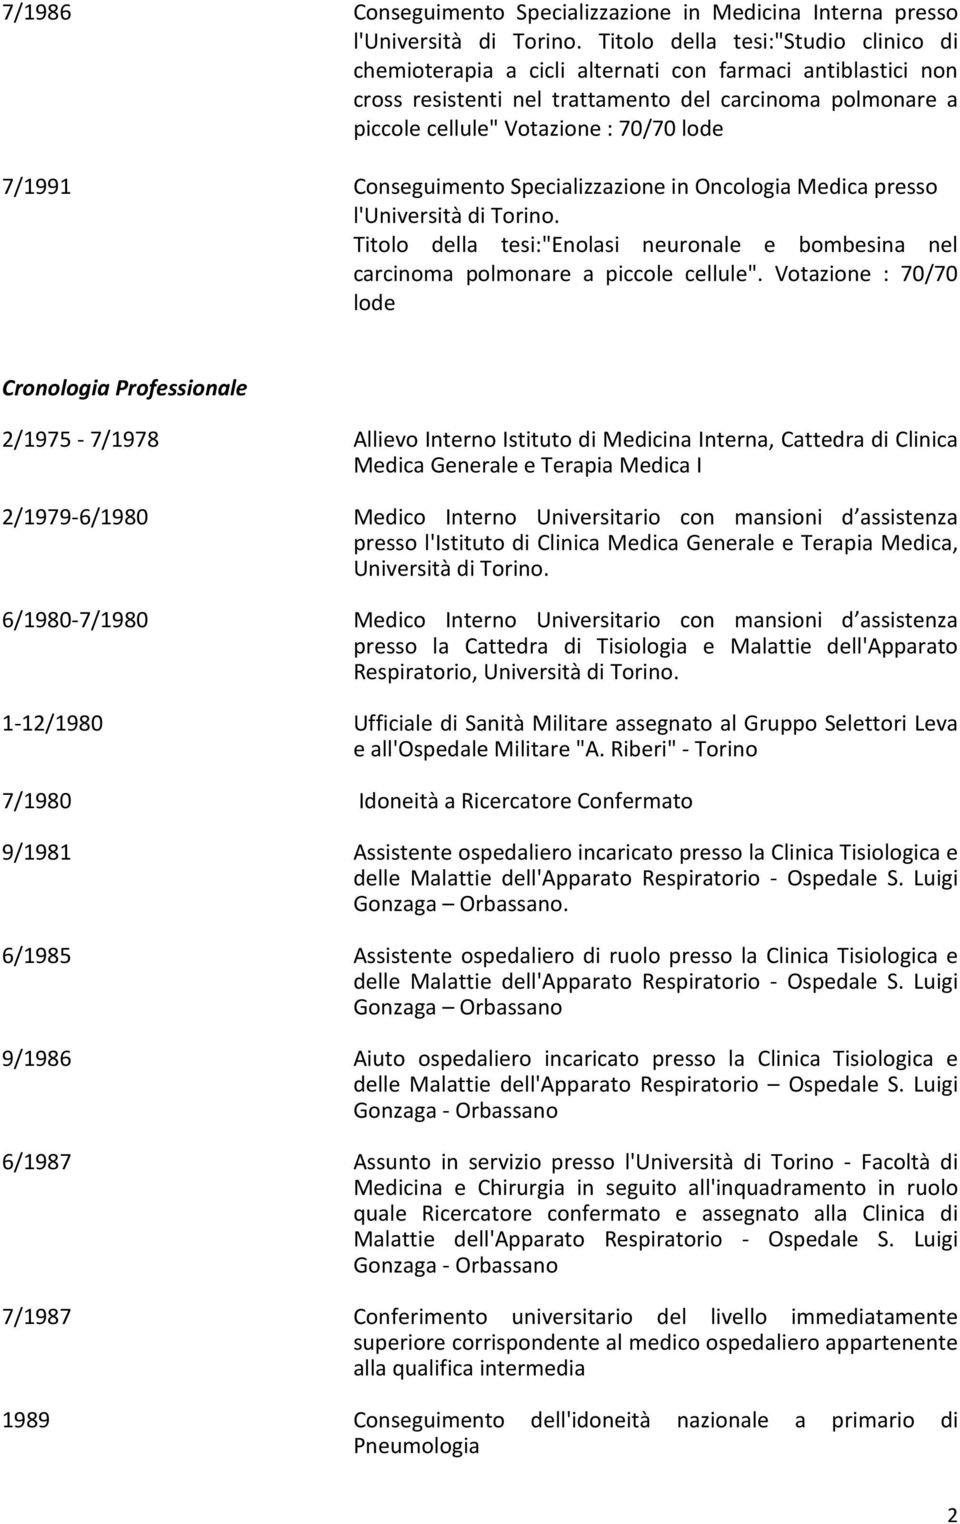 7/1991 Conseguimento Specializzazione in Oncologia Medica presso l'università di Torino. Titolo della tesi:"enolasi neuronale e bombesina nel carcinoma polmonare a piccole cellule".